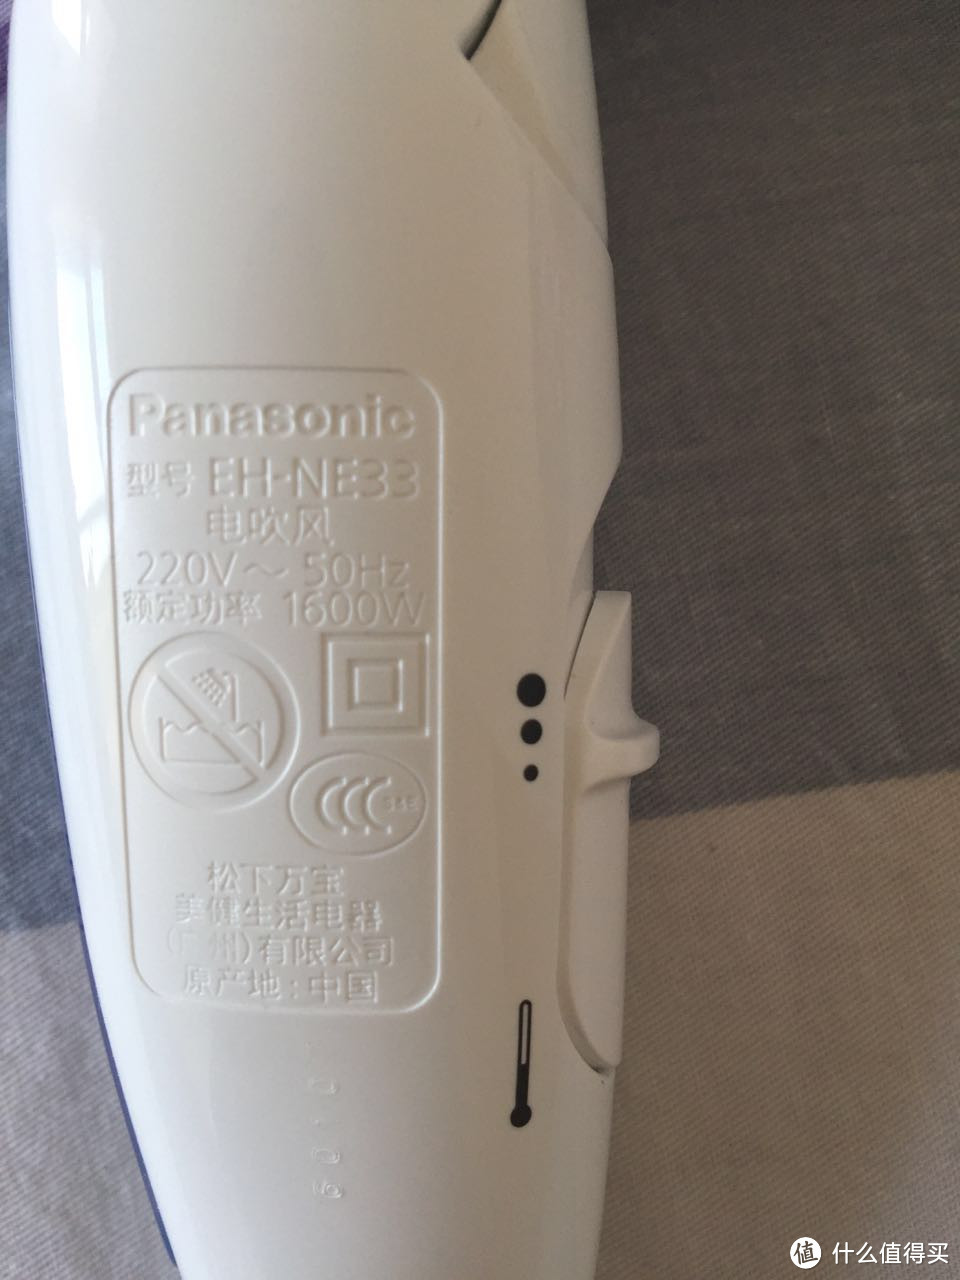 意外收获：Panasonic 松下 EH-NE33 电吹风 晒物及使用感受